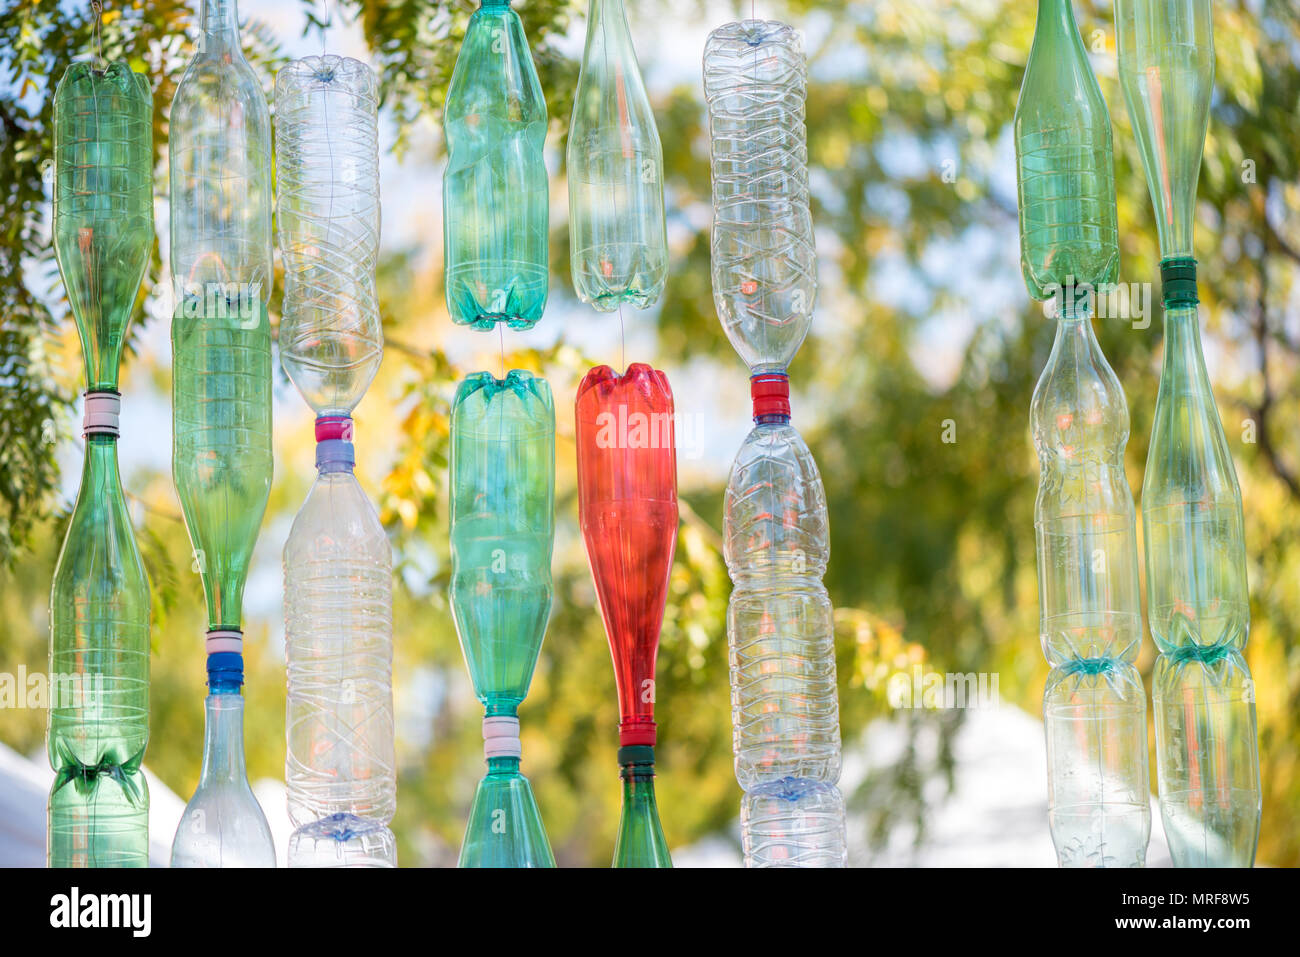 Wand von bunten leere Plastikflaschen an einem sonnigen Tag mit grünen Bäumen Hintergrund Stockfoto